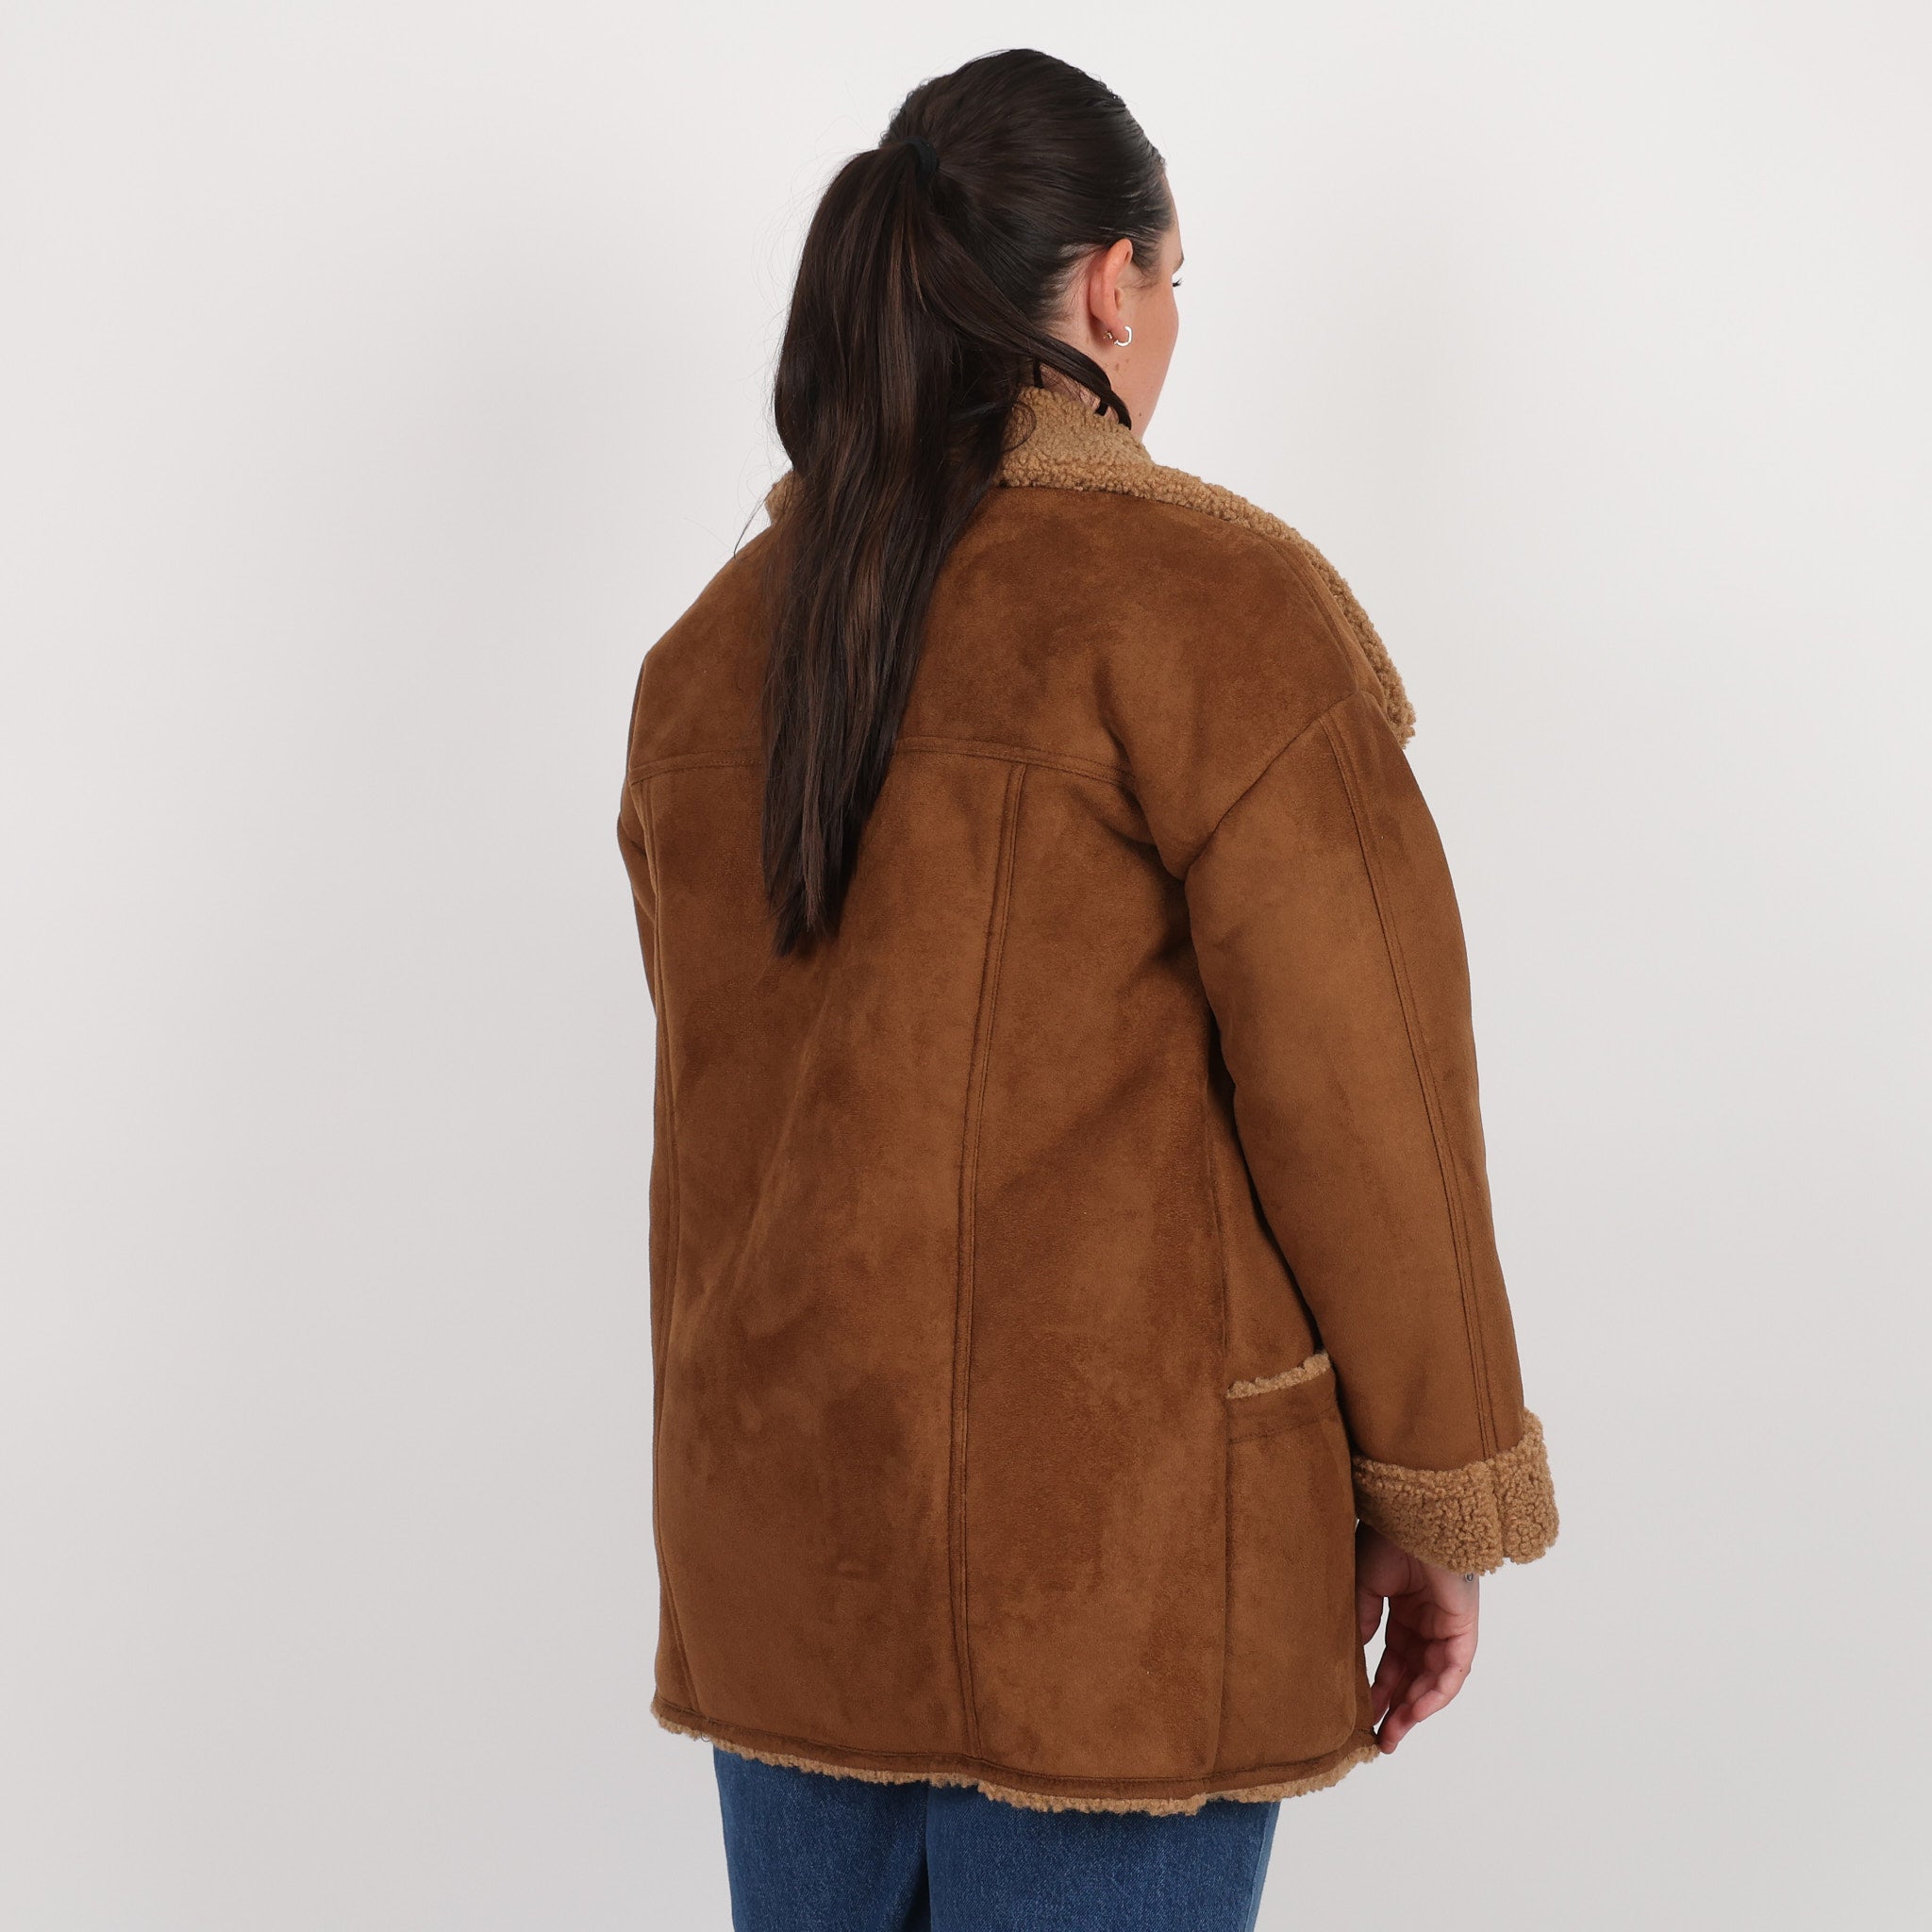 Coat, UK Size 10